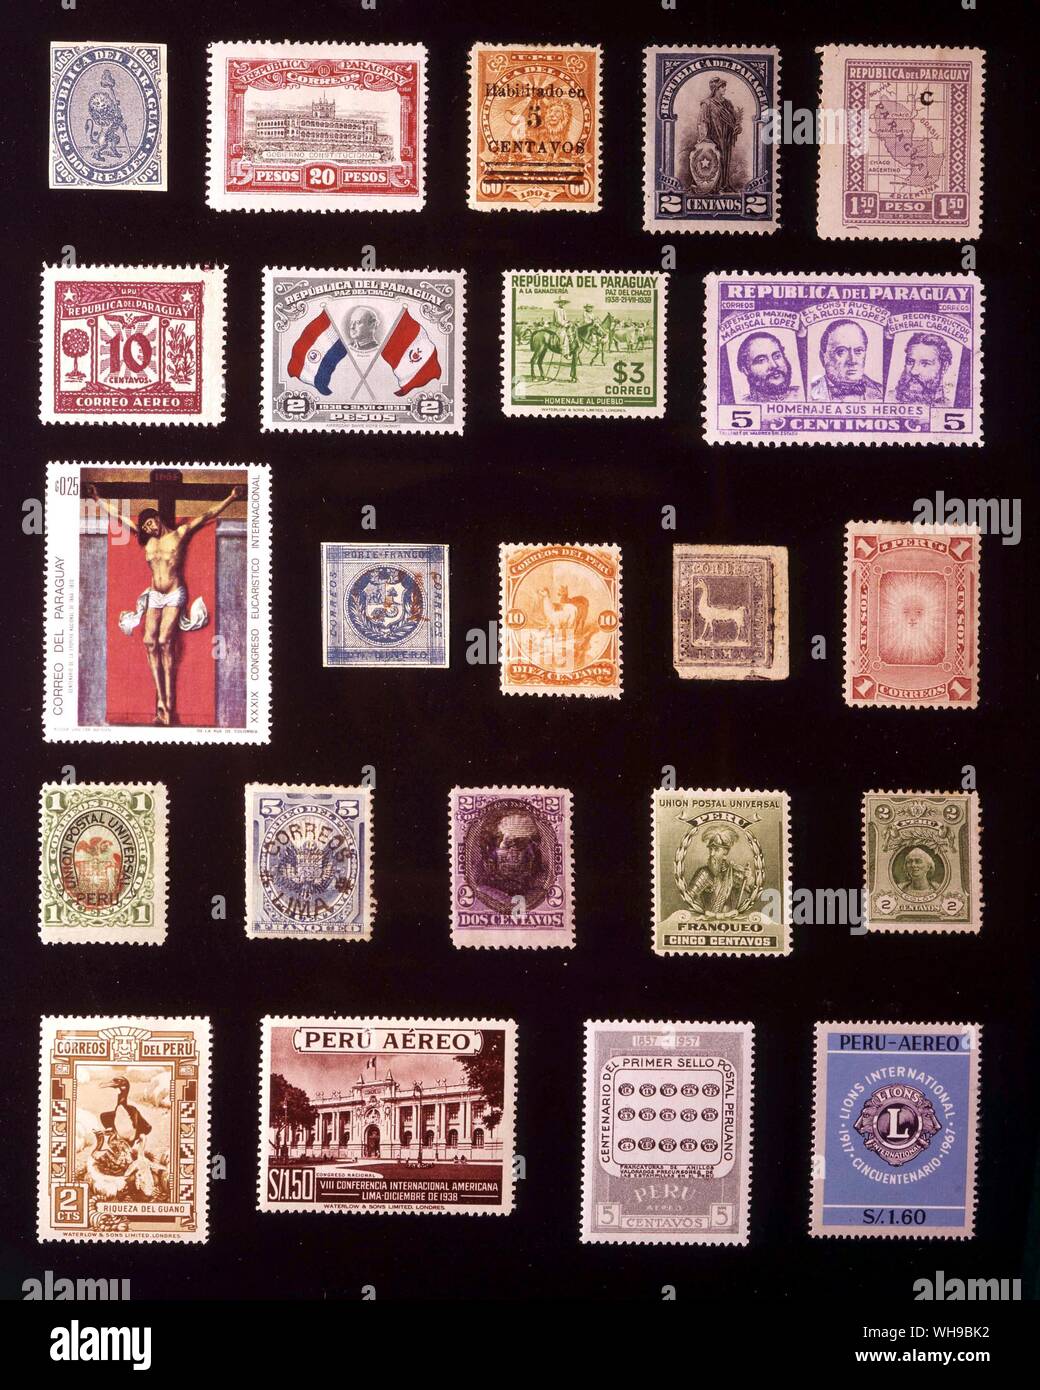 Amerika - PARAGUAY UND PERU: (von links nach rechts) 1. Paraguay, 2 Reales 1870, 2. Paraguay, 20 Pesos, 1905, 3. Paraguay, 5 Centavos, 1908, 4. Paraguey, 2 Centavos 1911, 5. Paraguay, 1,50 Pesos, 1927, 6. Paraguay, 10 Centavos, 1933, 7. Paraguay, 2 Pesos, 1939, 8. Paraguay, 3 Pesos, 1940, 9. Paraguay, 5 centimos 1954, 10. Paraguay, 25 Centavos 1968, 11. Peru, 1 dinero, 1858, 12. Peru, 10 Centavos 1866, 13. Peru, 2 Centavos 1873, 14. Peru, 1 Sol, 1874, 15. Peru, 1 Centavo 1882, 16. Peru, 5 Centavos 1884, 17. Peru, 2 Centavos 1894, 18. Peru, 5 Centavos 1897, 19. Peru, 2 Centavos 1909, 20. Stockfoto